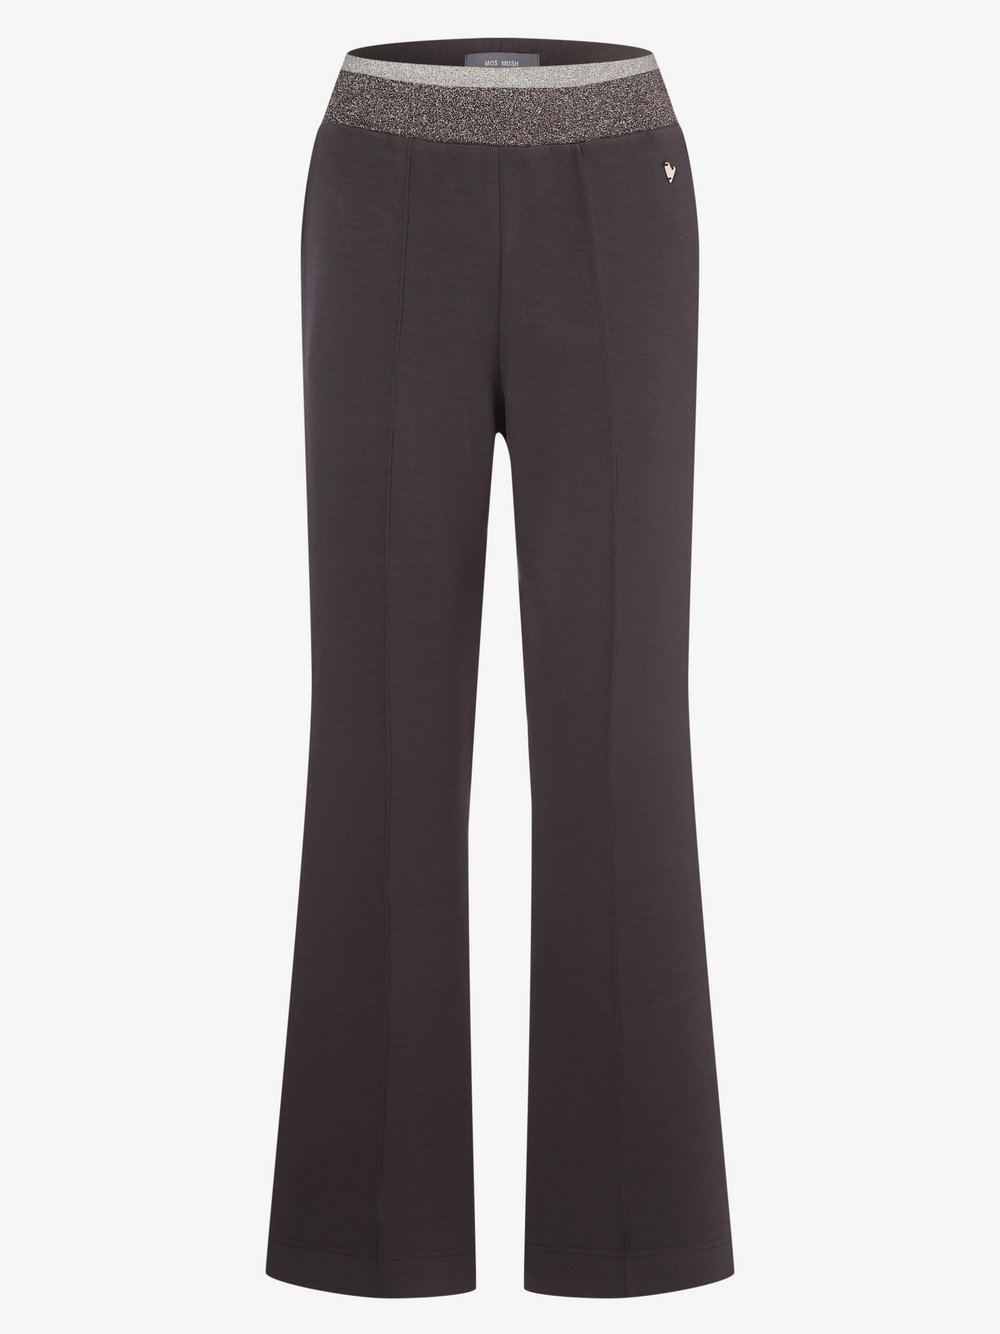 MOS MOSH - Damskie spodnie dresowe – Ambon, brązowy